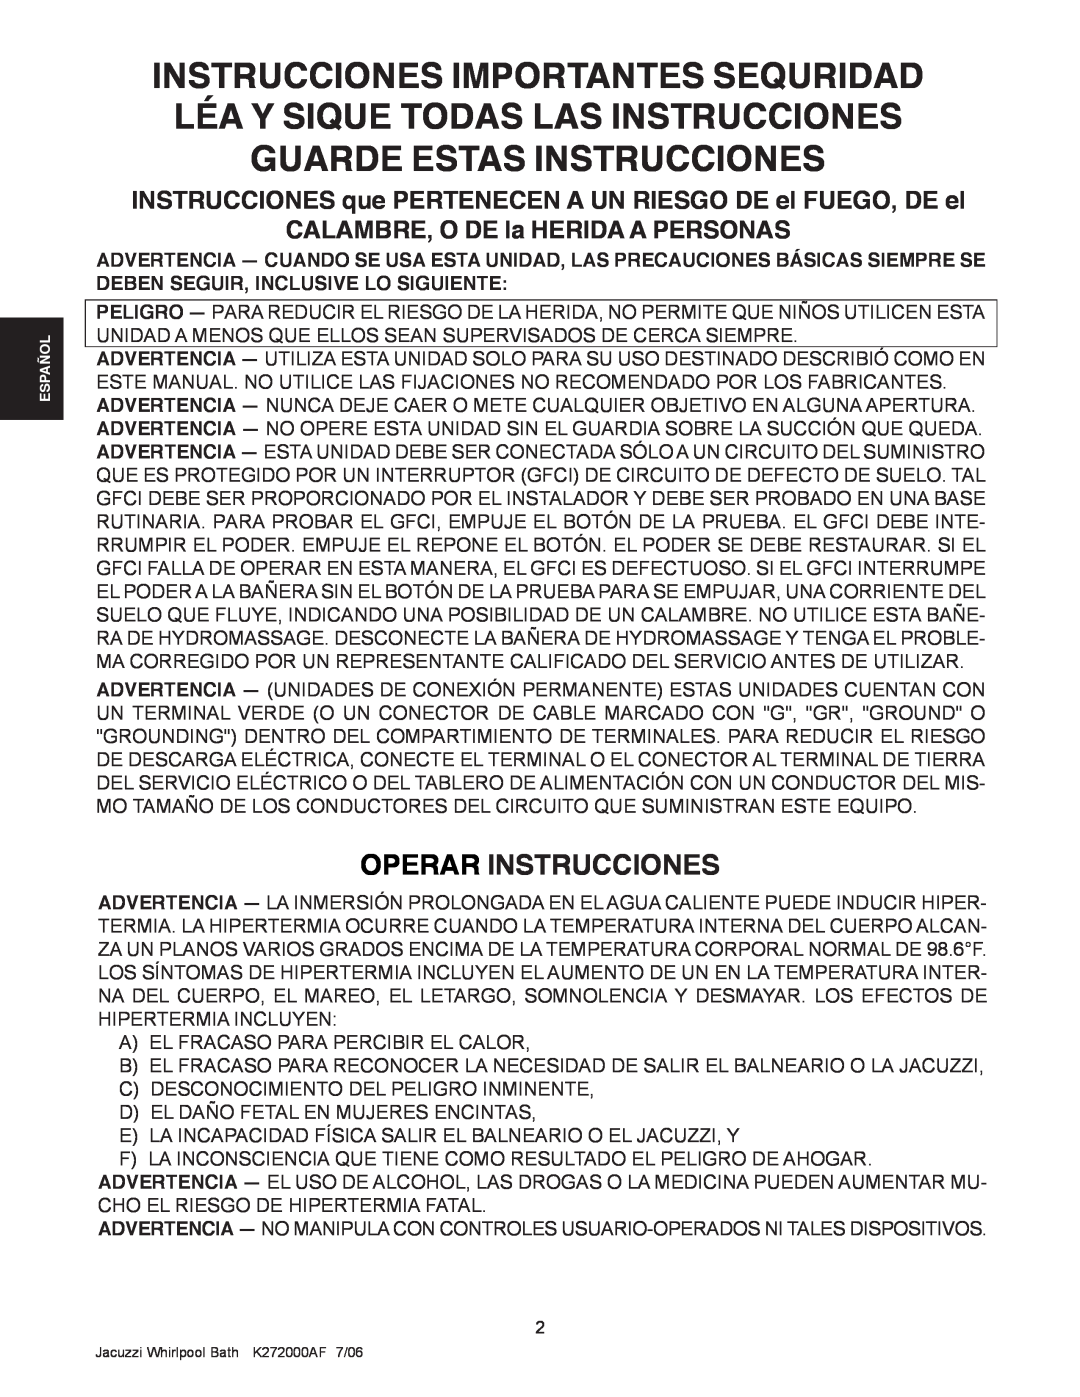 Jacuzzi K272000AF 7/06 manual Operar Instrucciones 